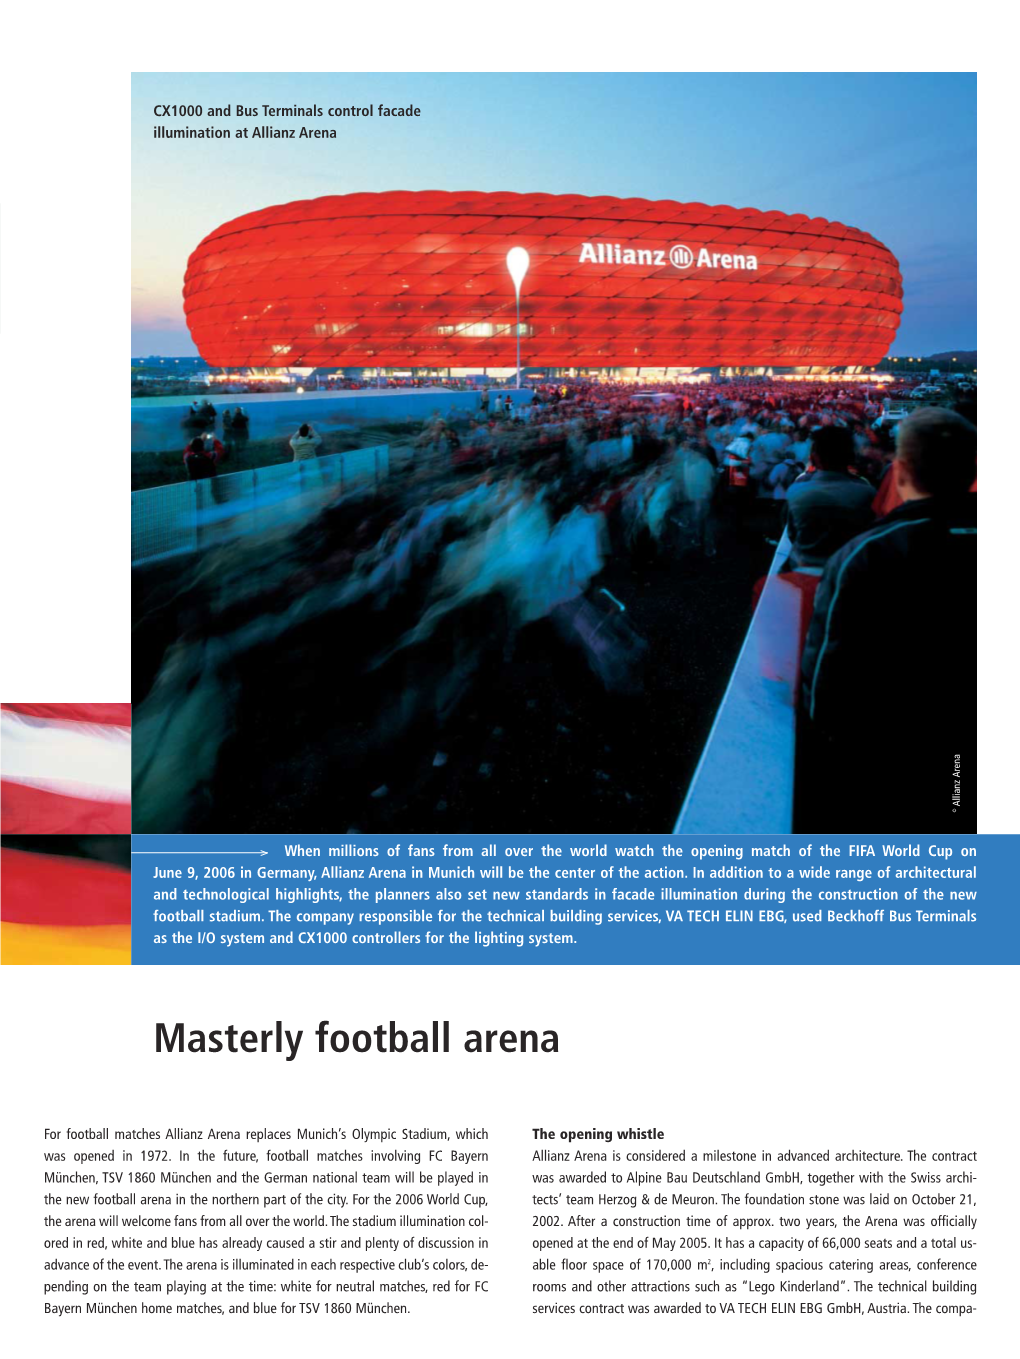 Masterly Football Arena